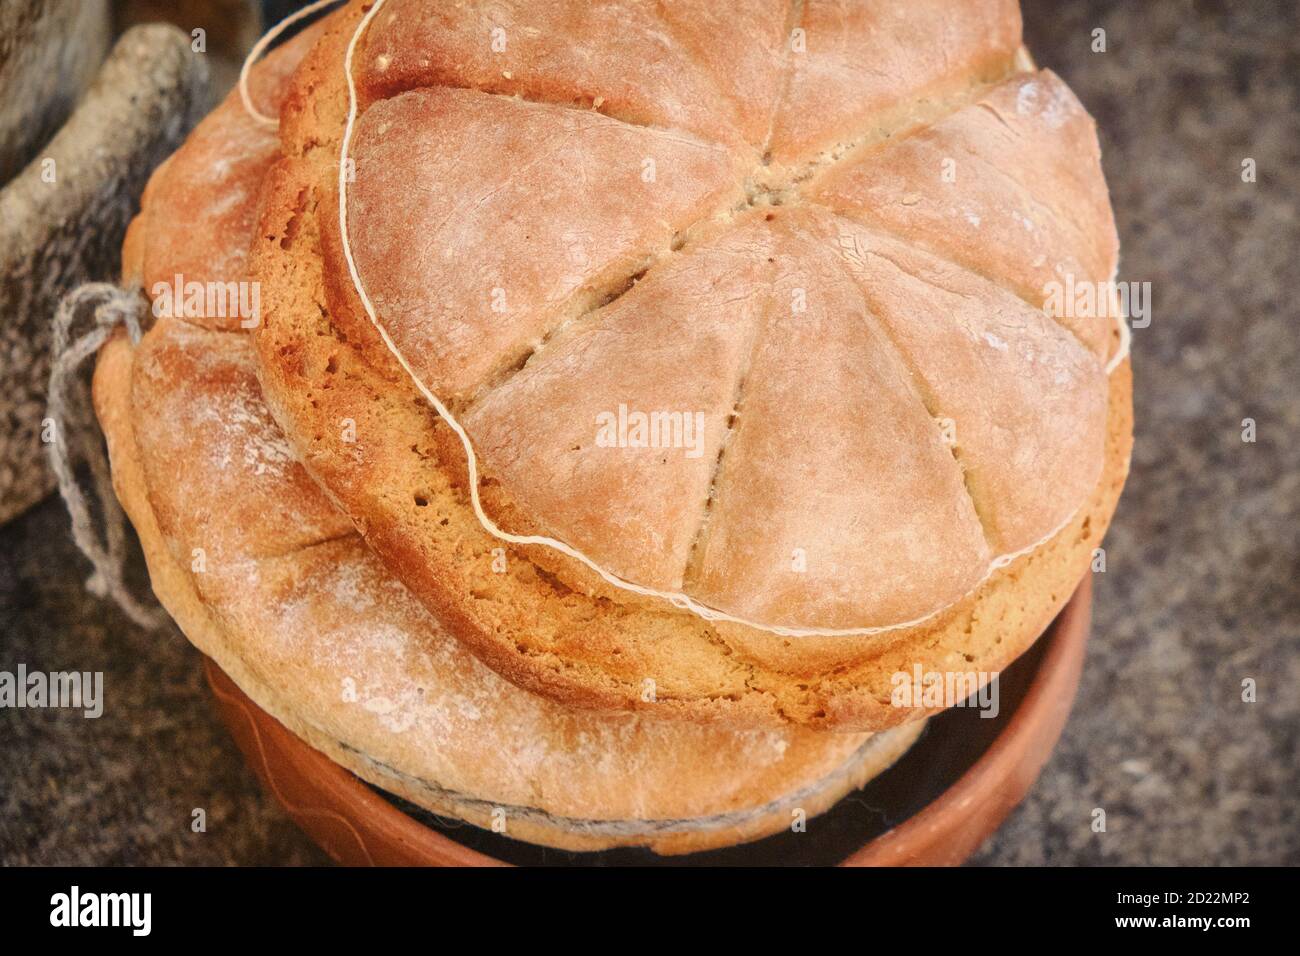 Das Brot gebacken in der Retro-Technologie des alten Rom. Rekonstruktion der Küche in der Antike. Römisches Brot, Rekonstruktion. Stockfoto